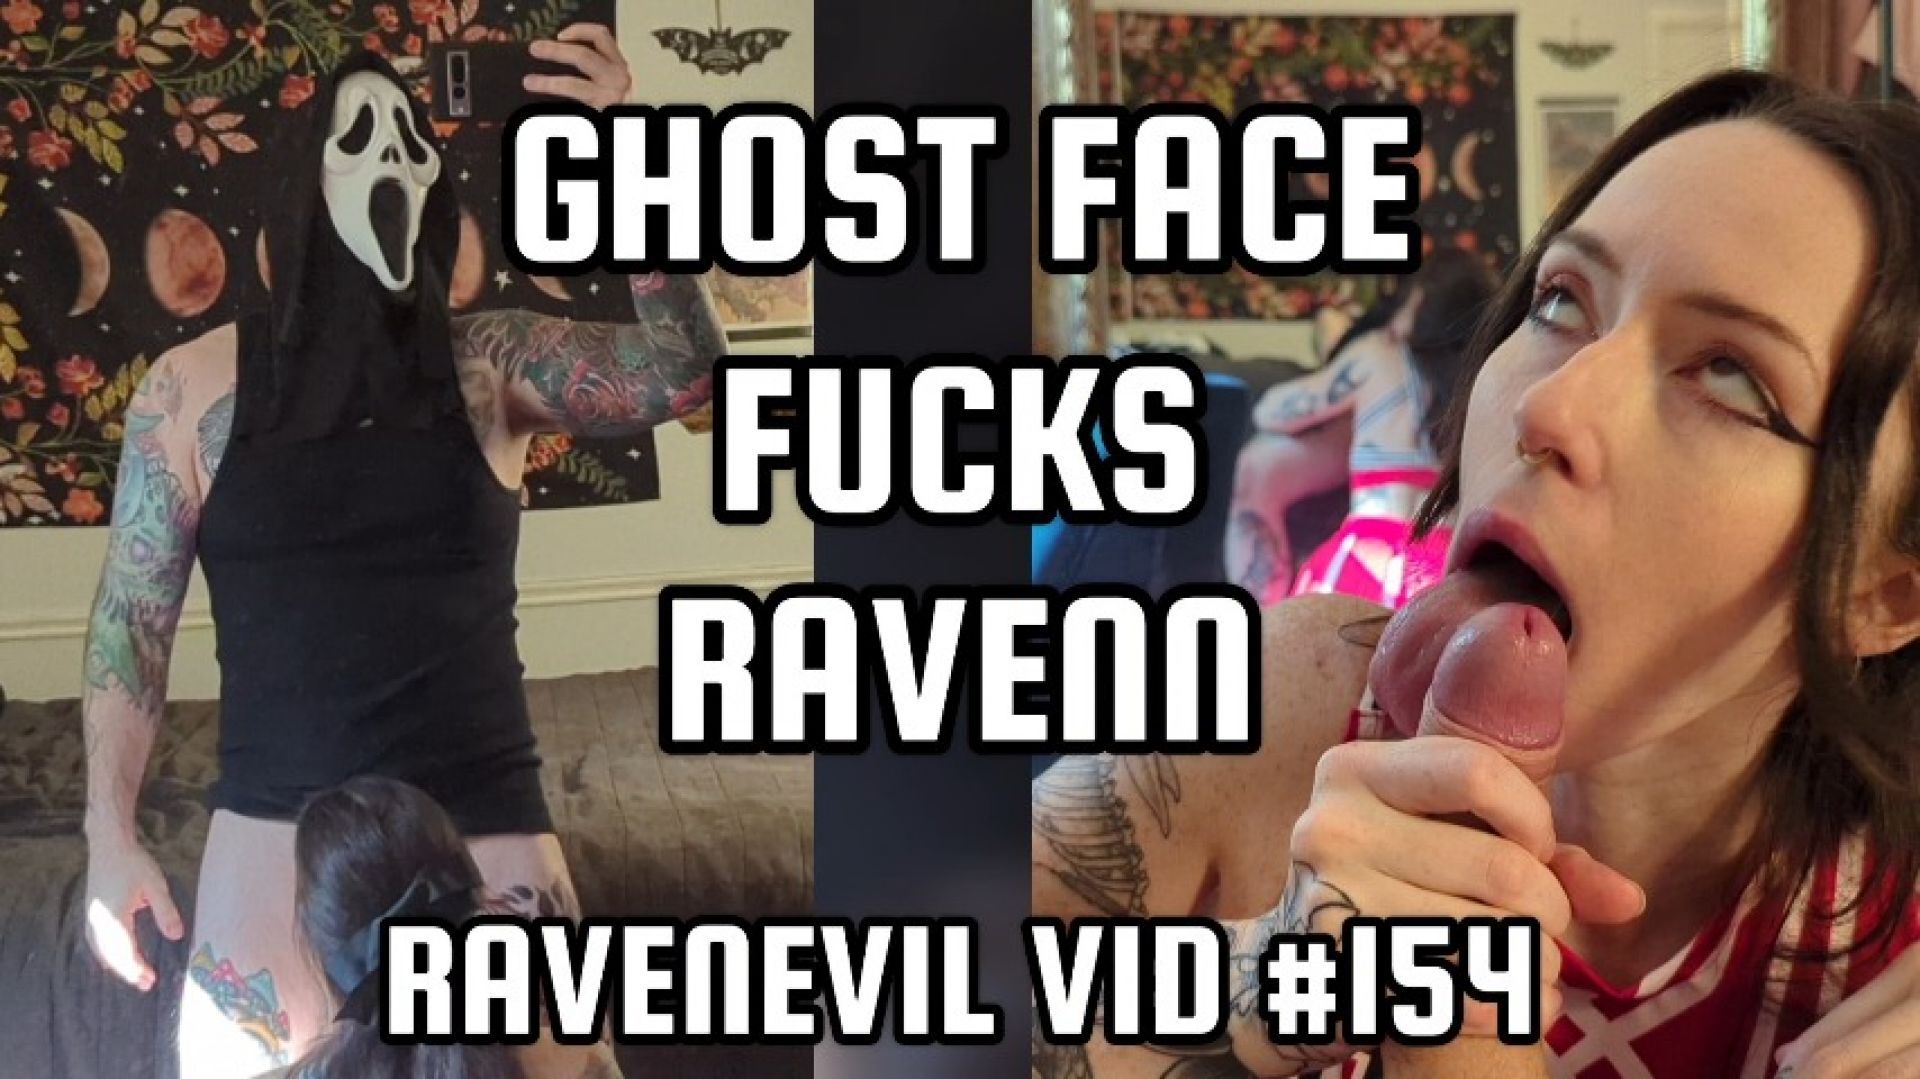 Ghost Face Fucks Ravenn